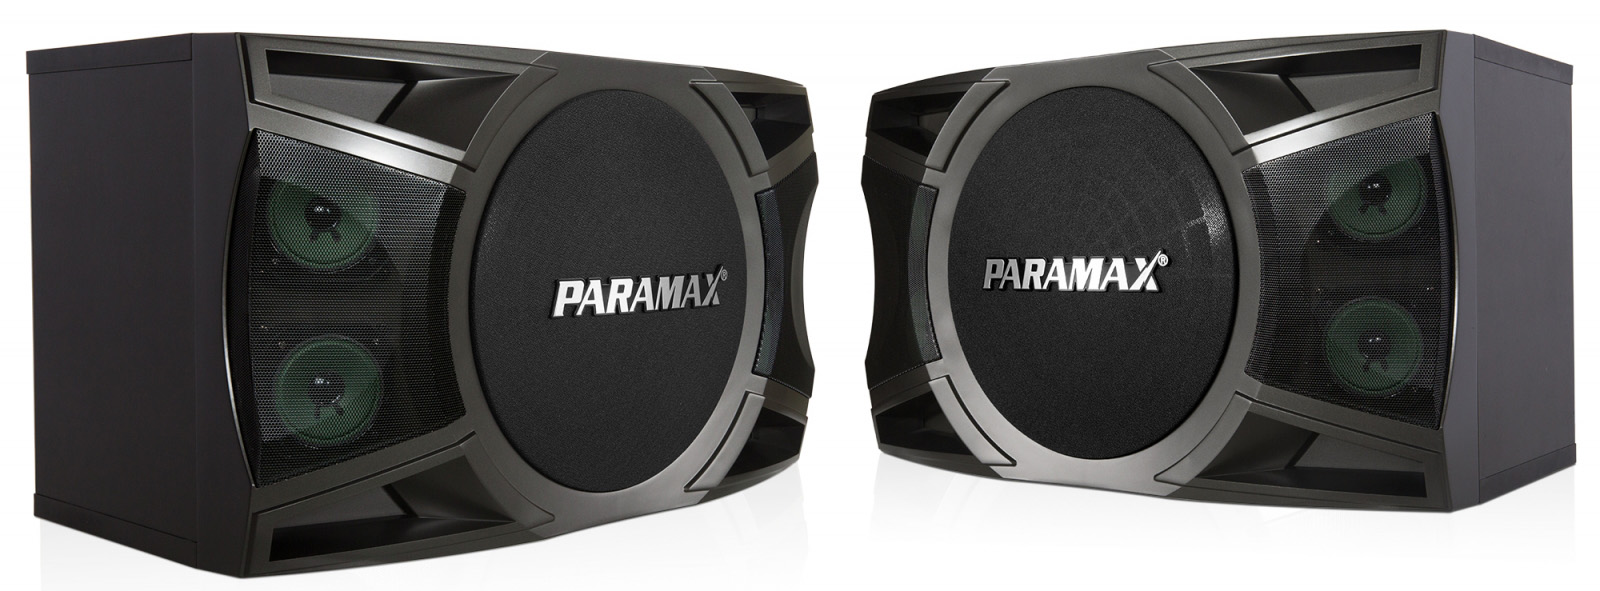 Cách chọn mua loa karaoke Paramax tốt nhất - 2